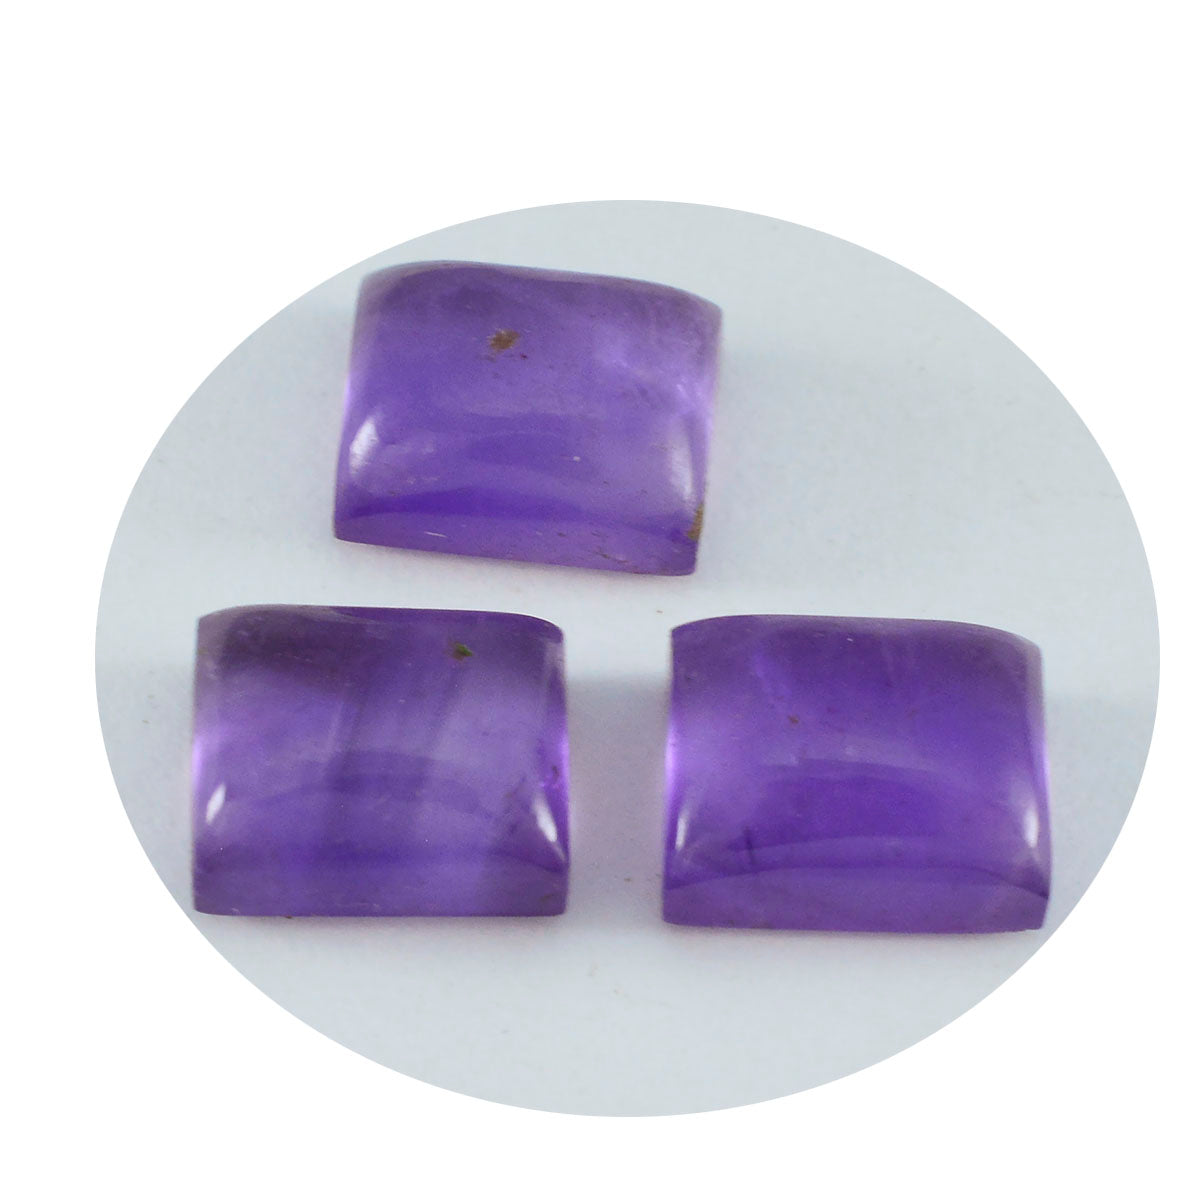 riyogems 1 шт. фиолетовый аметист кабошон 10x14 мм восьмиугольной формы сладкий качественный свободный камень